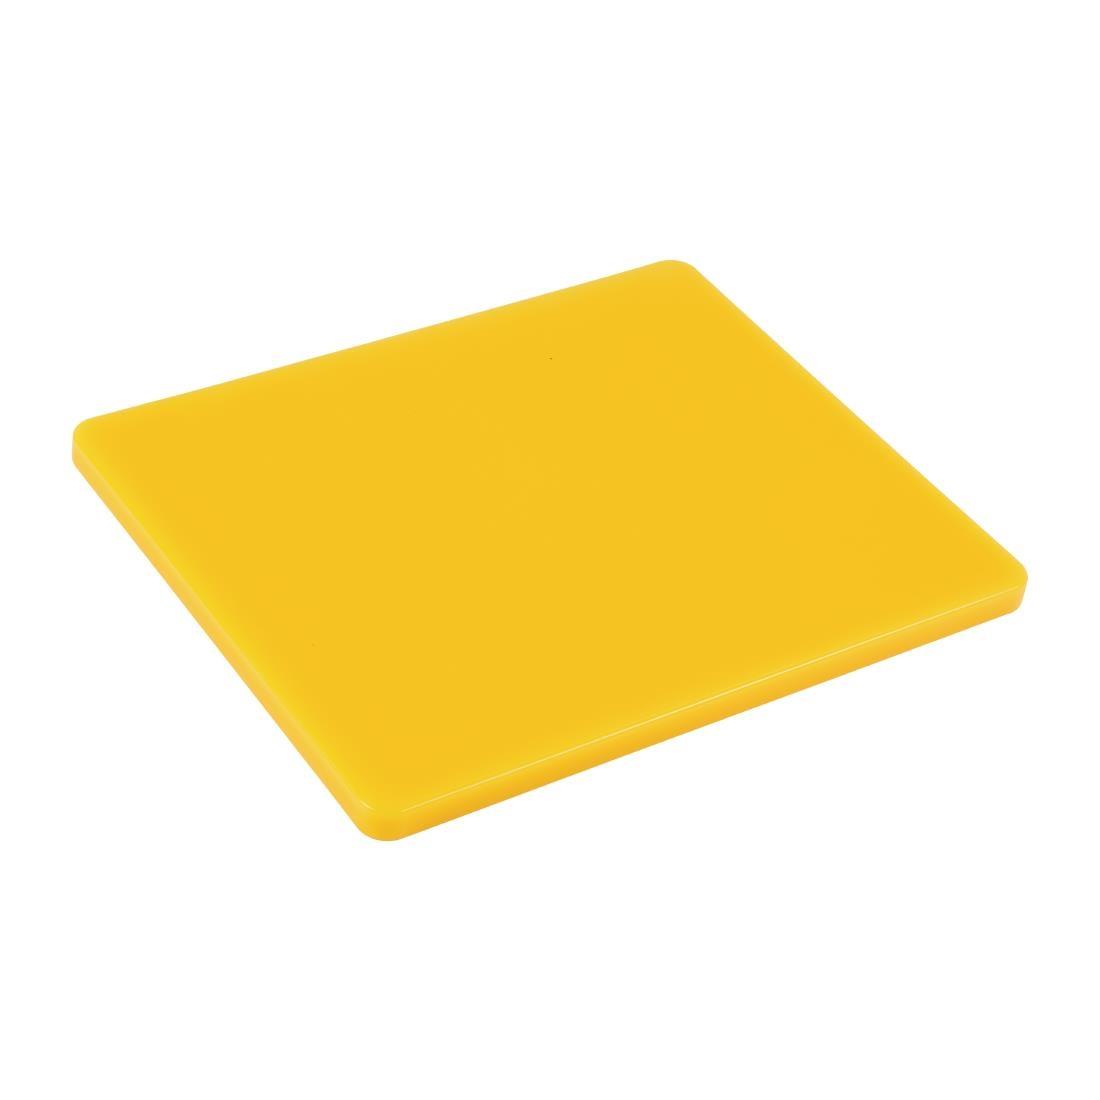 Hygiplas Gastronorm 1/2 Yellow Chopping Board- Each - GL293 - 1